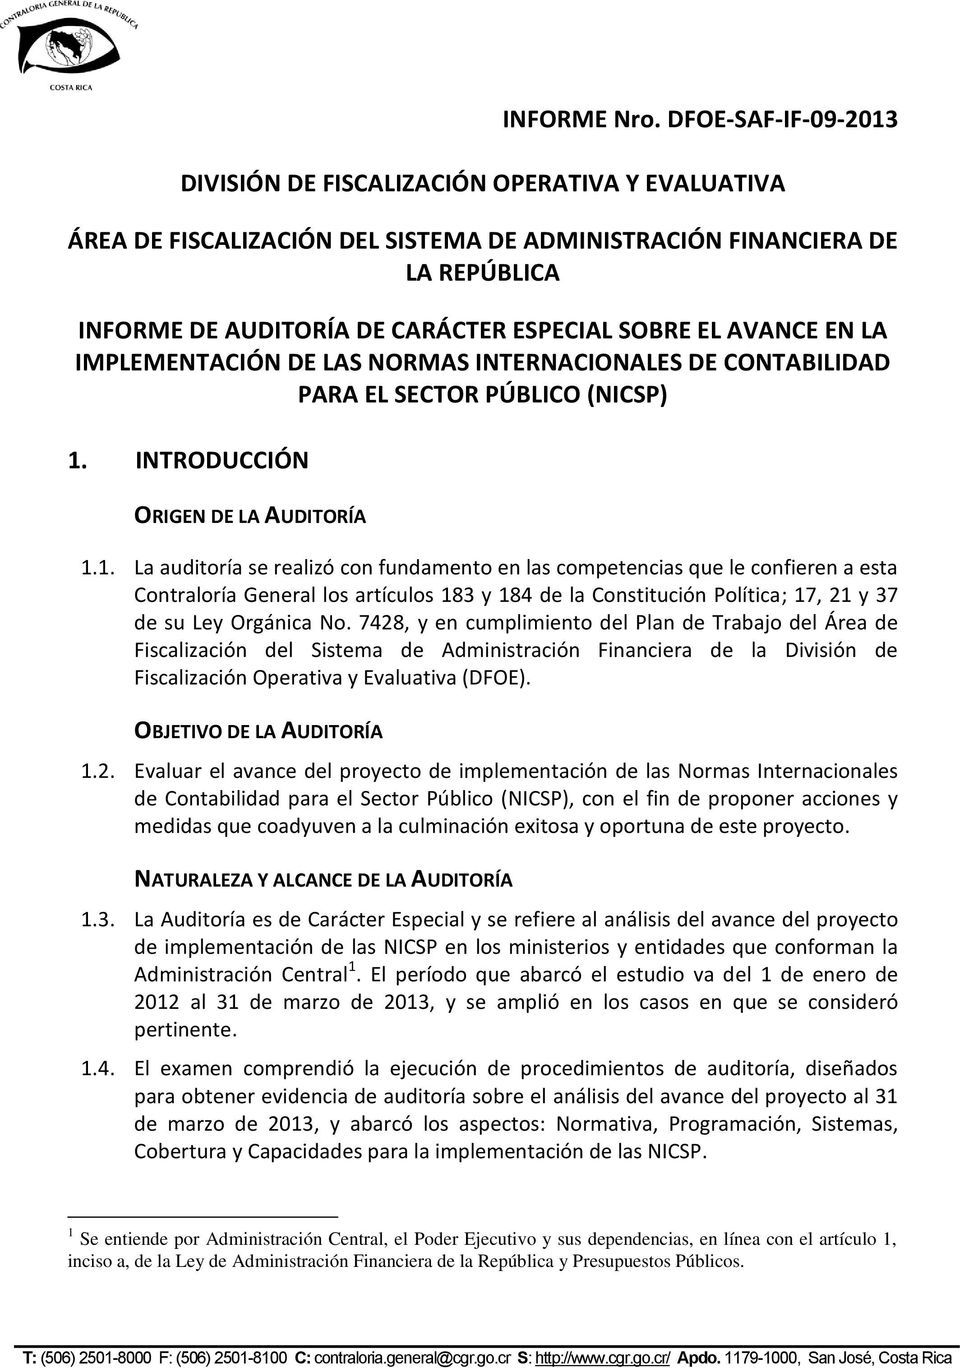 AVANCE EN LA IMPLEMENTACIÓN DE LAS NORMAS INTERNACIONALES DE CONTABILIDAD PARA EL SECTOR PÚBLICO (NICSP) 1.